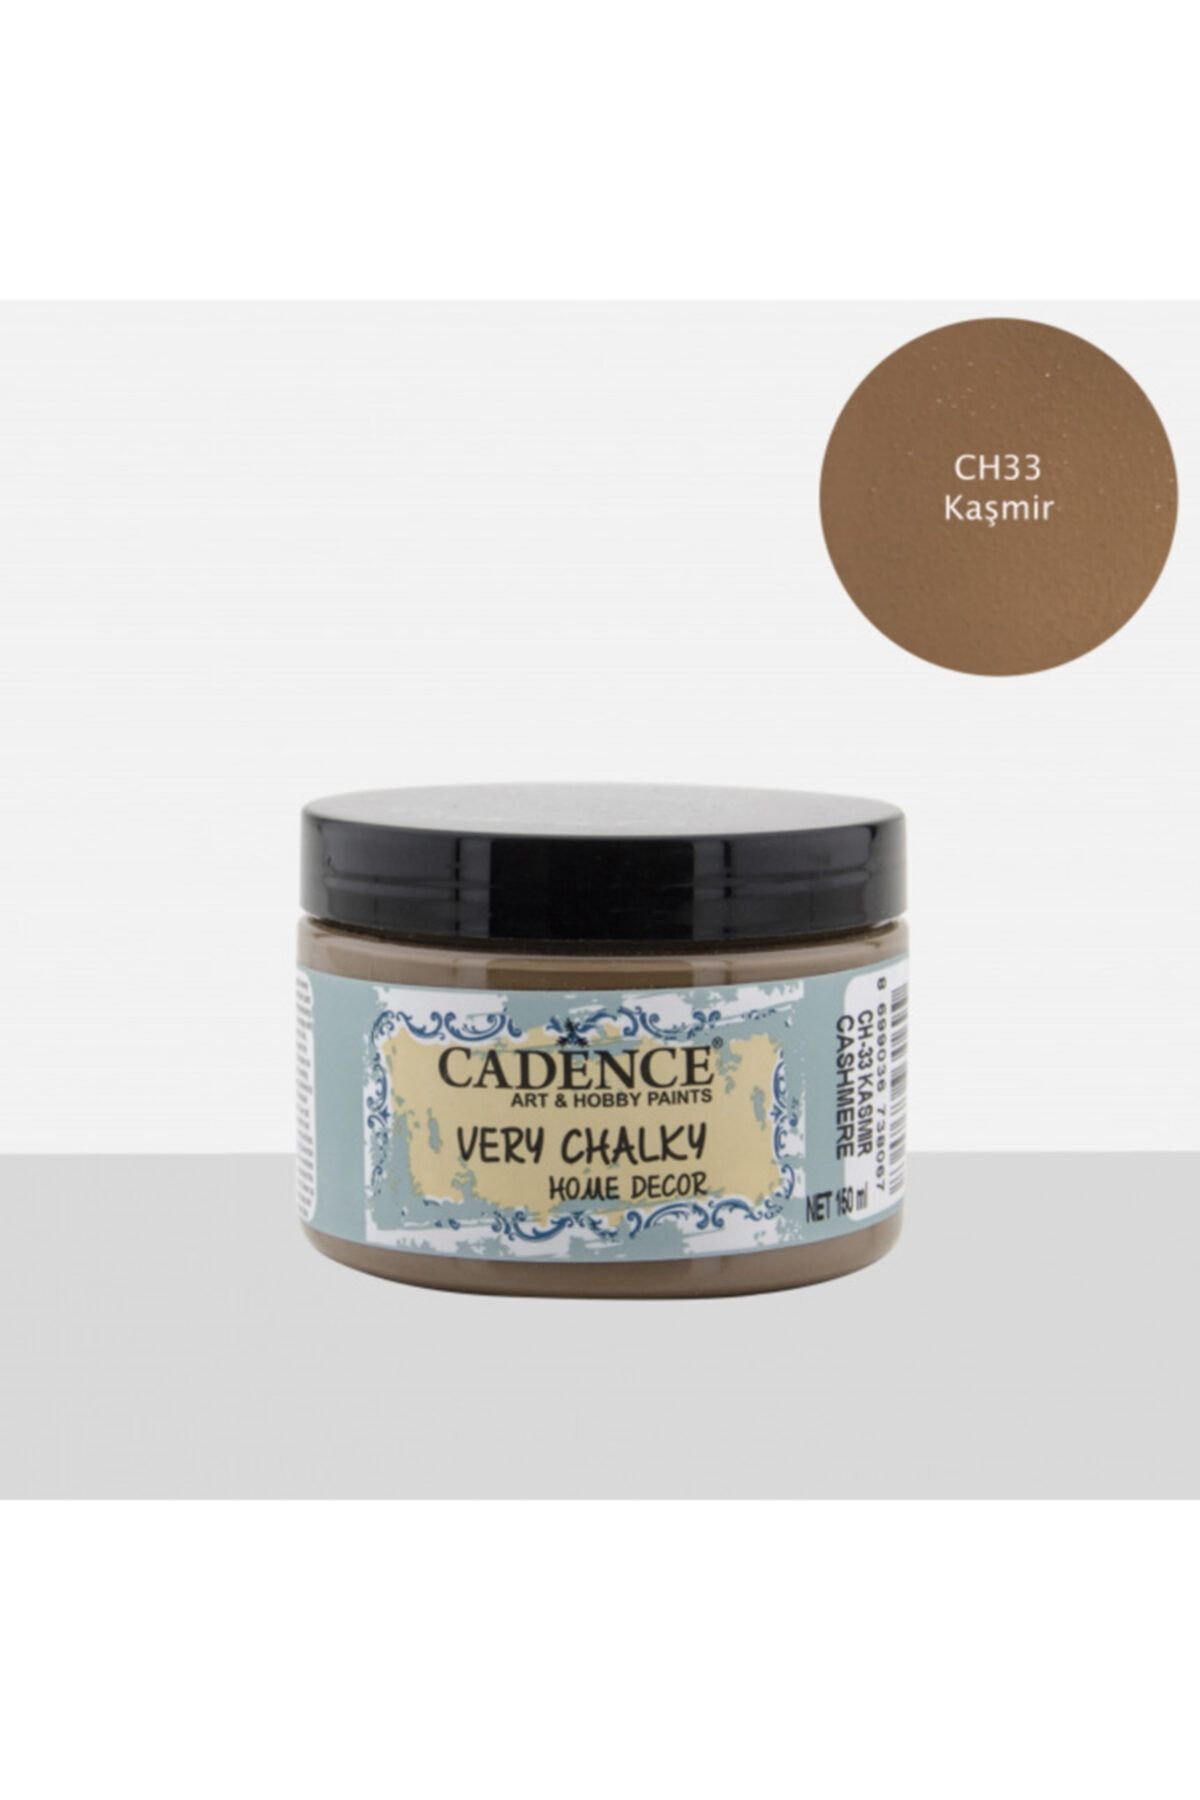 Cadence Ch33 Kaşmir - Very Chalky Home Decor 150ml